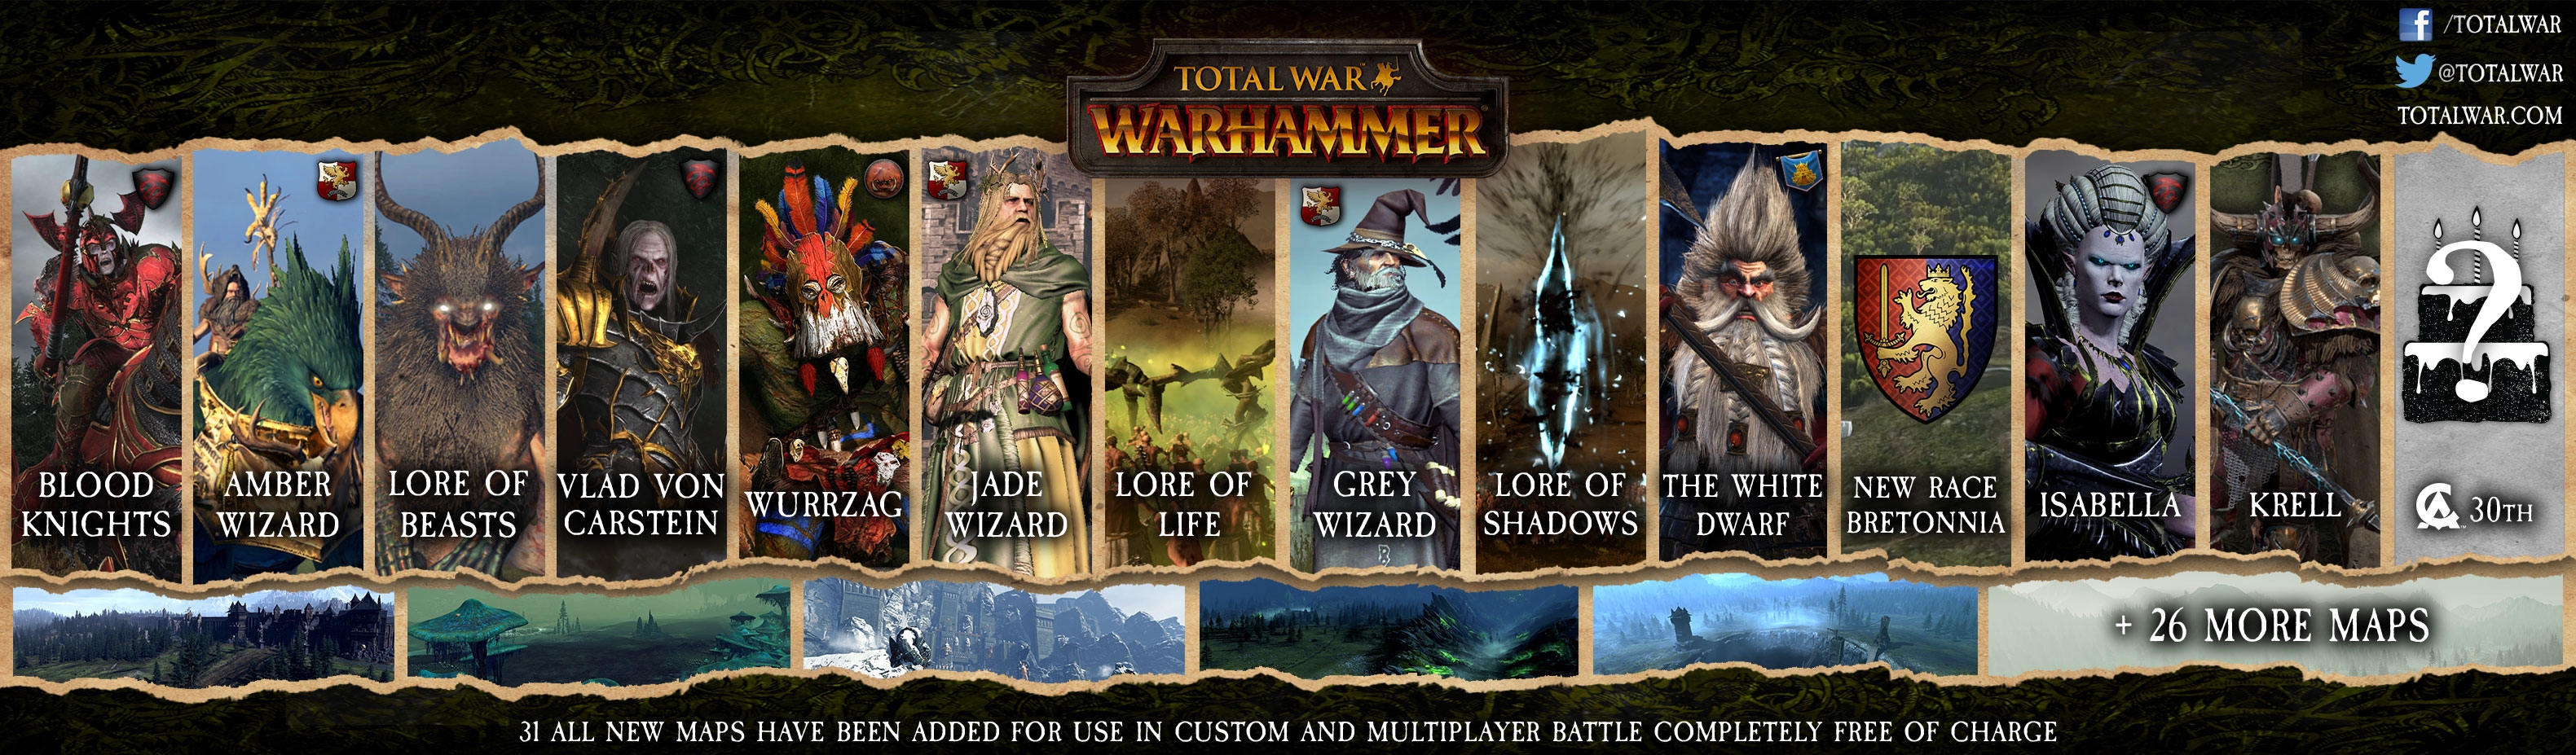 factions total war warhammer 2